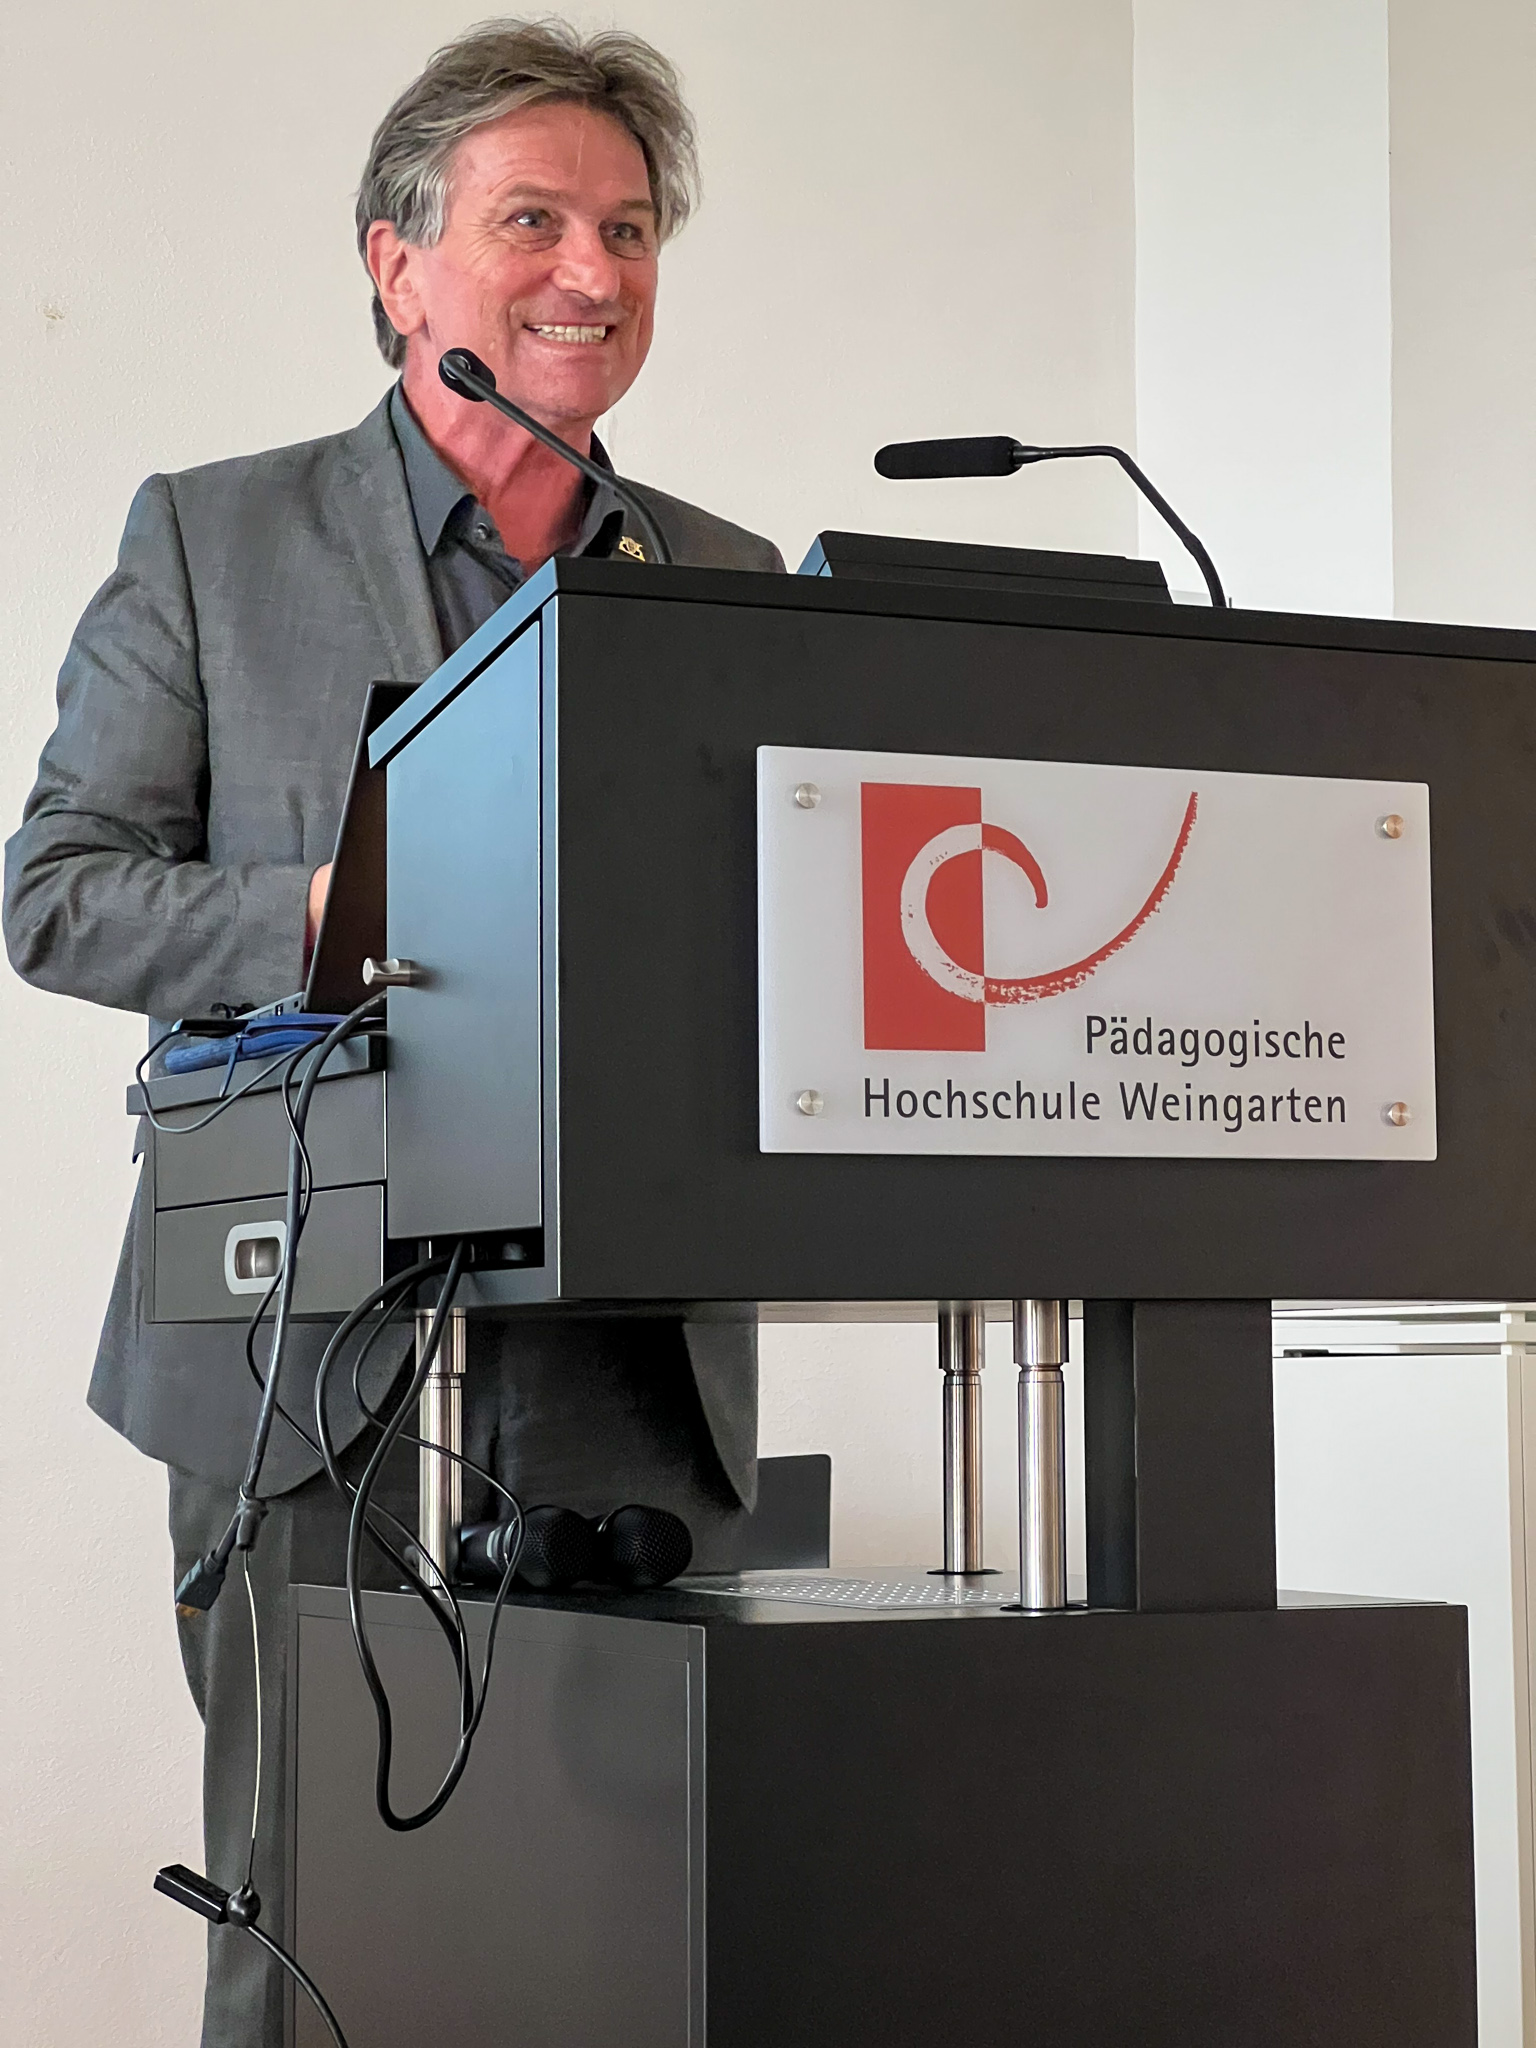 Manfred Lucha, Minister für Soziales, Gesundheit und Integration Baden-Württemberg, bei der Ausstellungseröffnung an einem Pult der Pädagogischen Hochschule Weingarten..